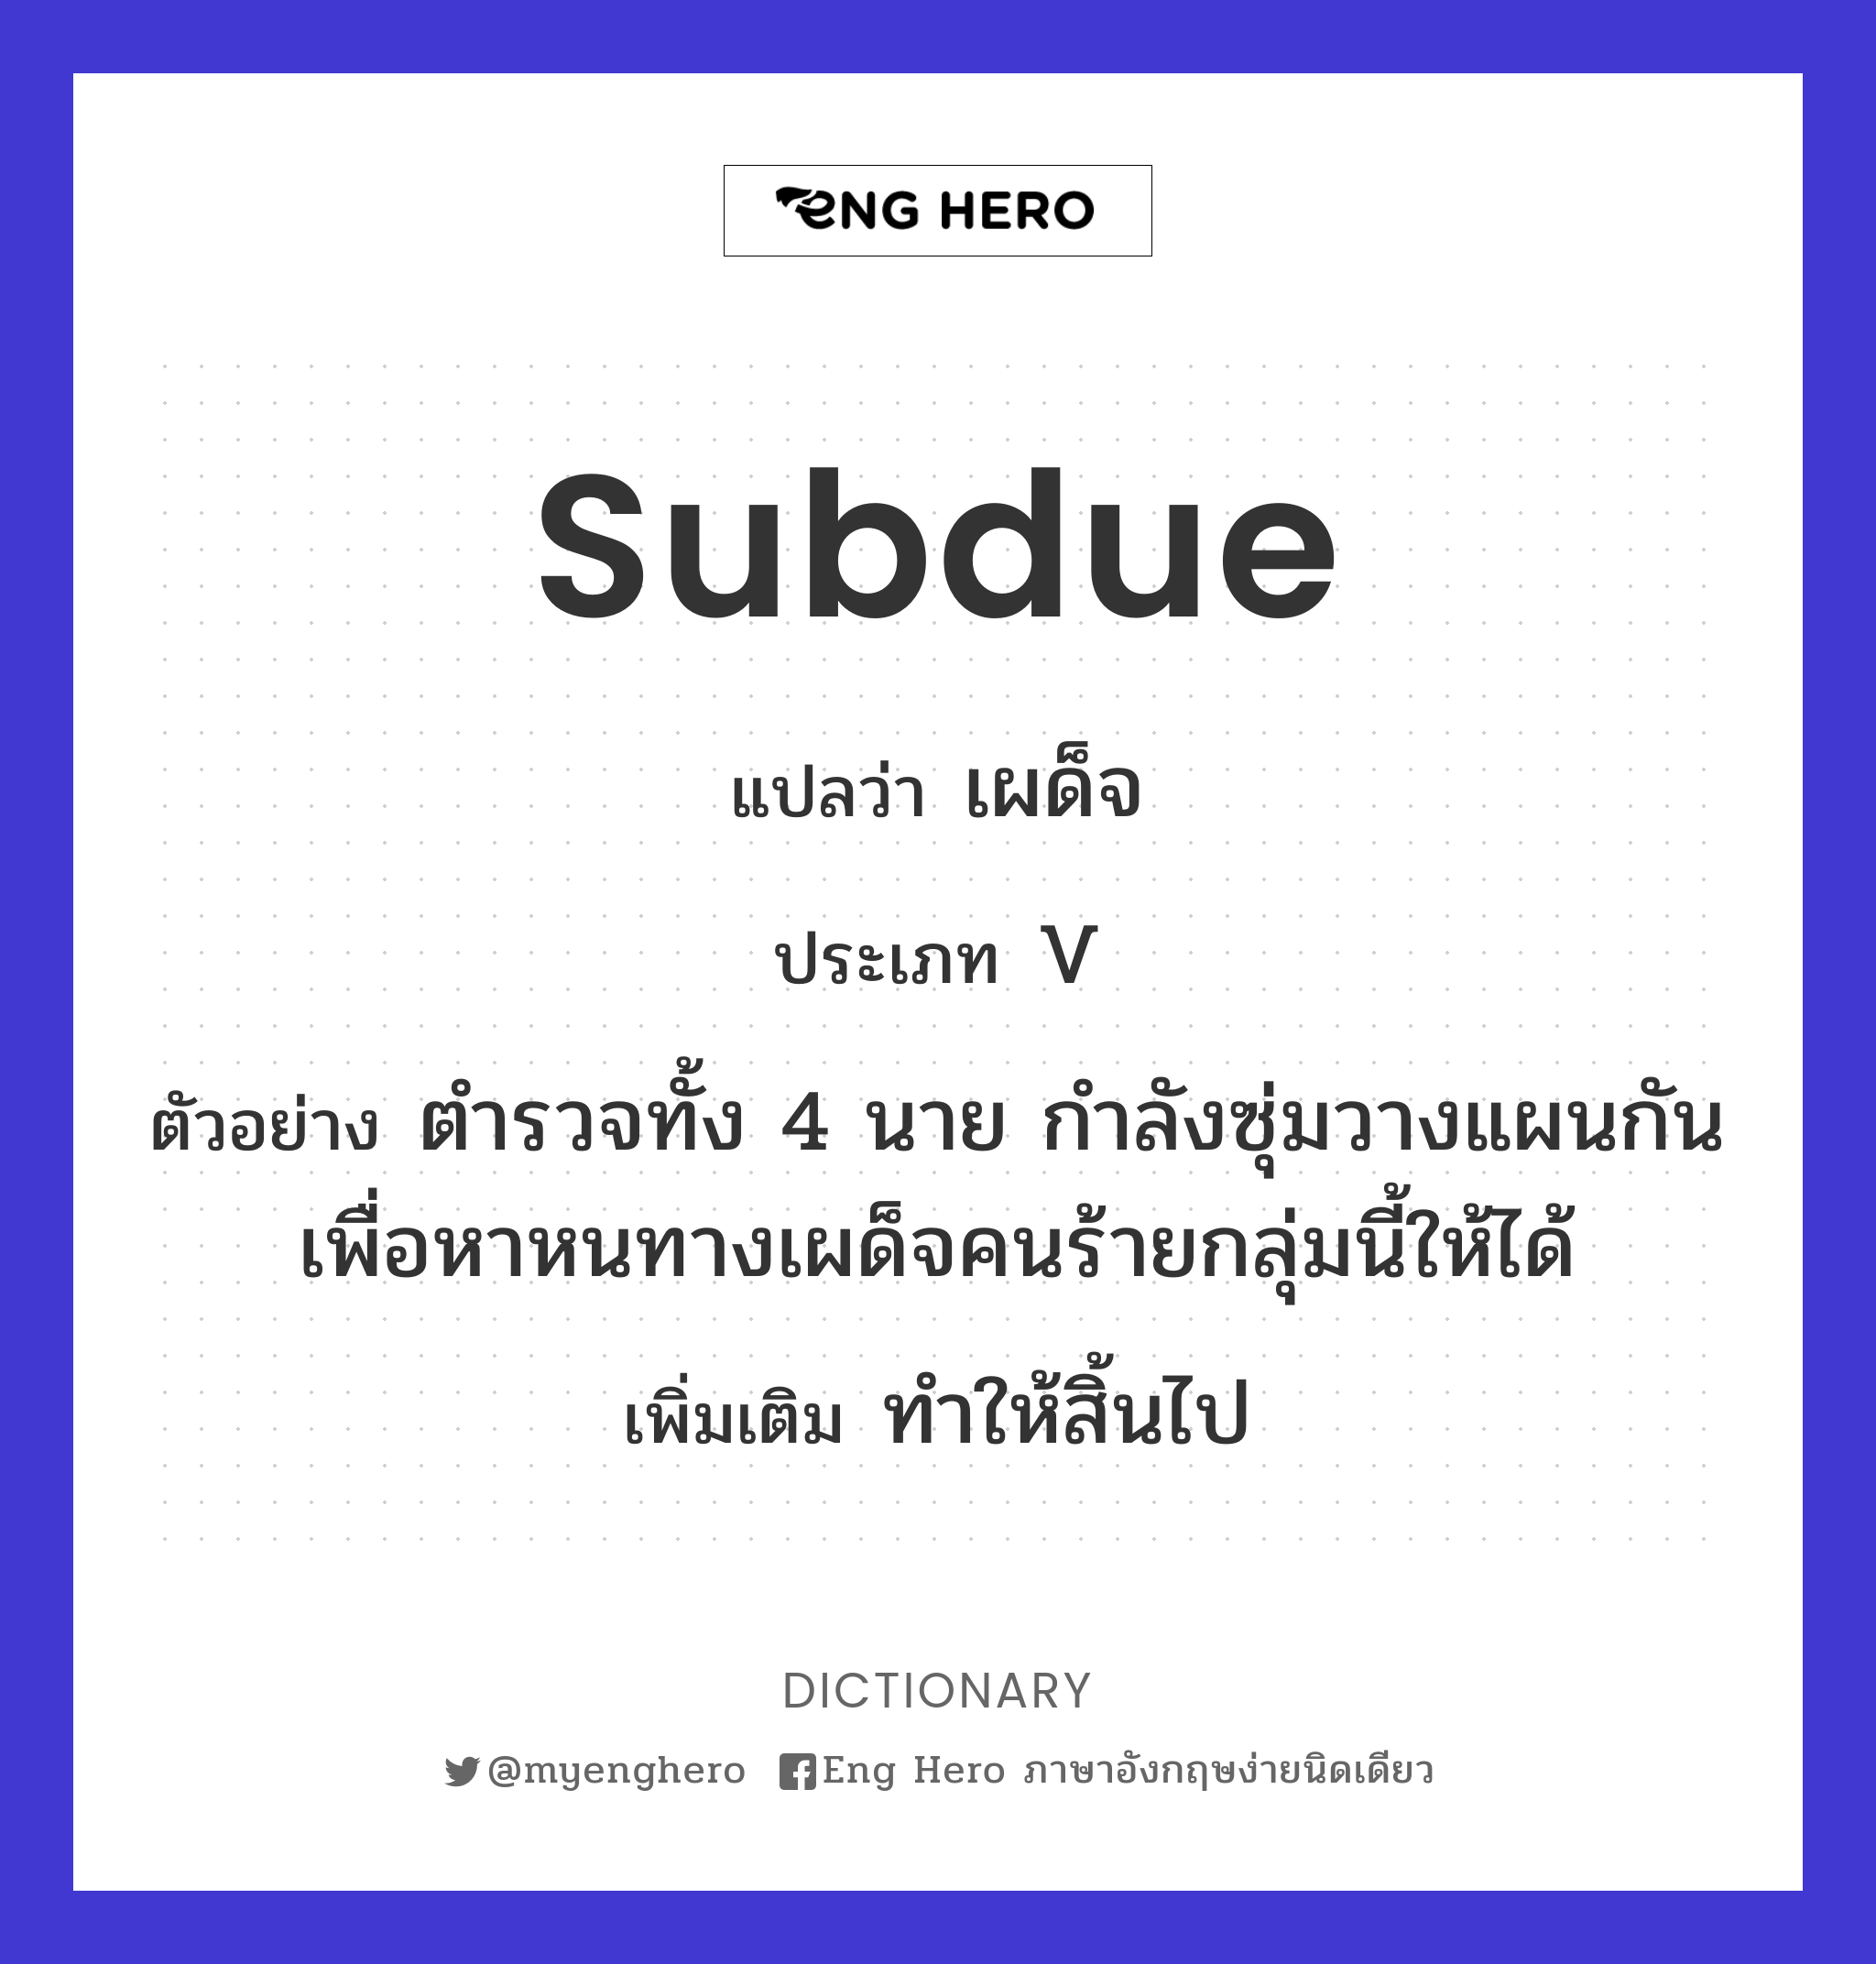 subdue